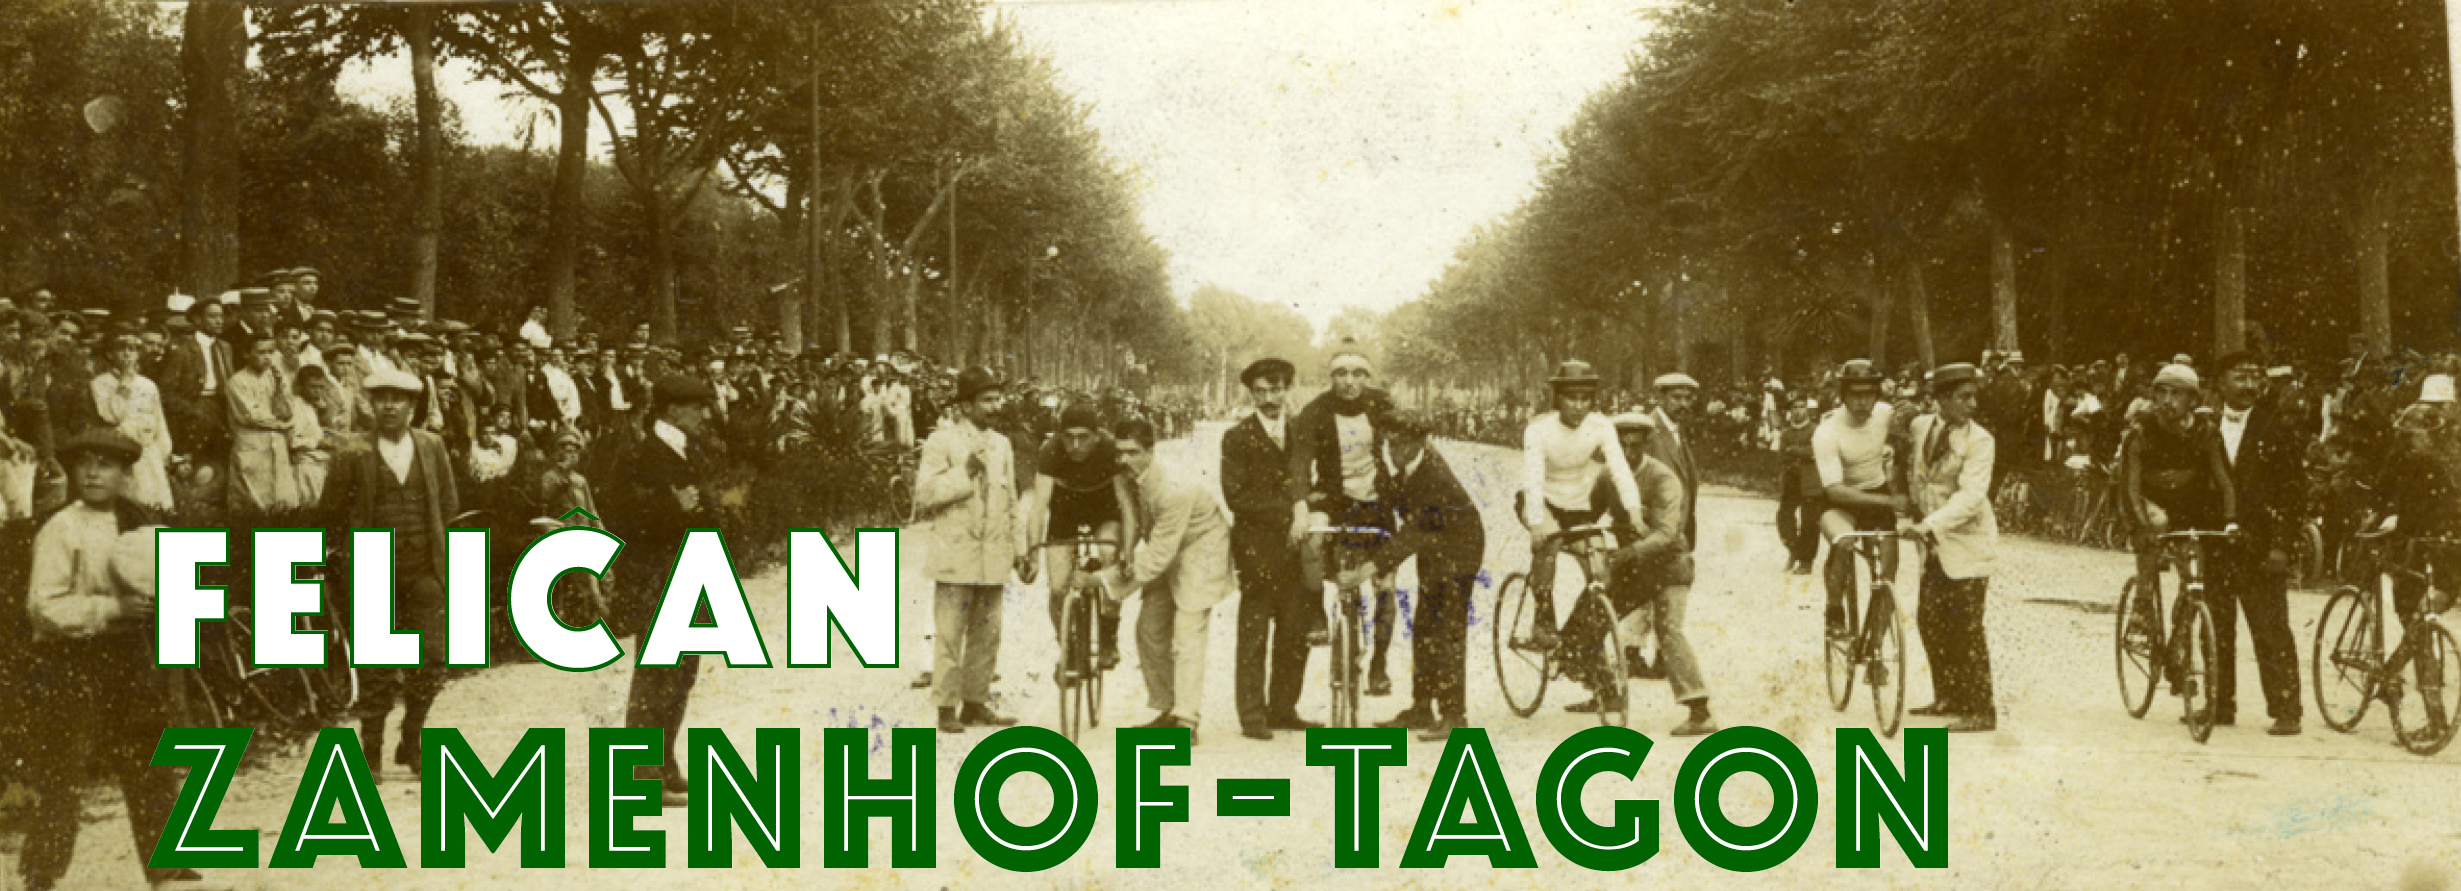 Ekiro de la bicikla konkurso dum la 5a UK en Barcelono (1909)